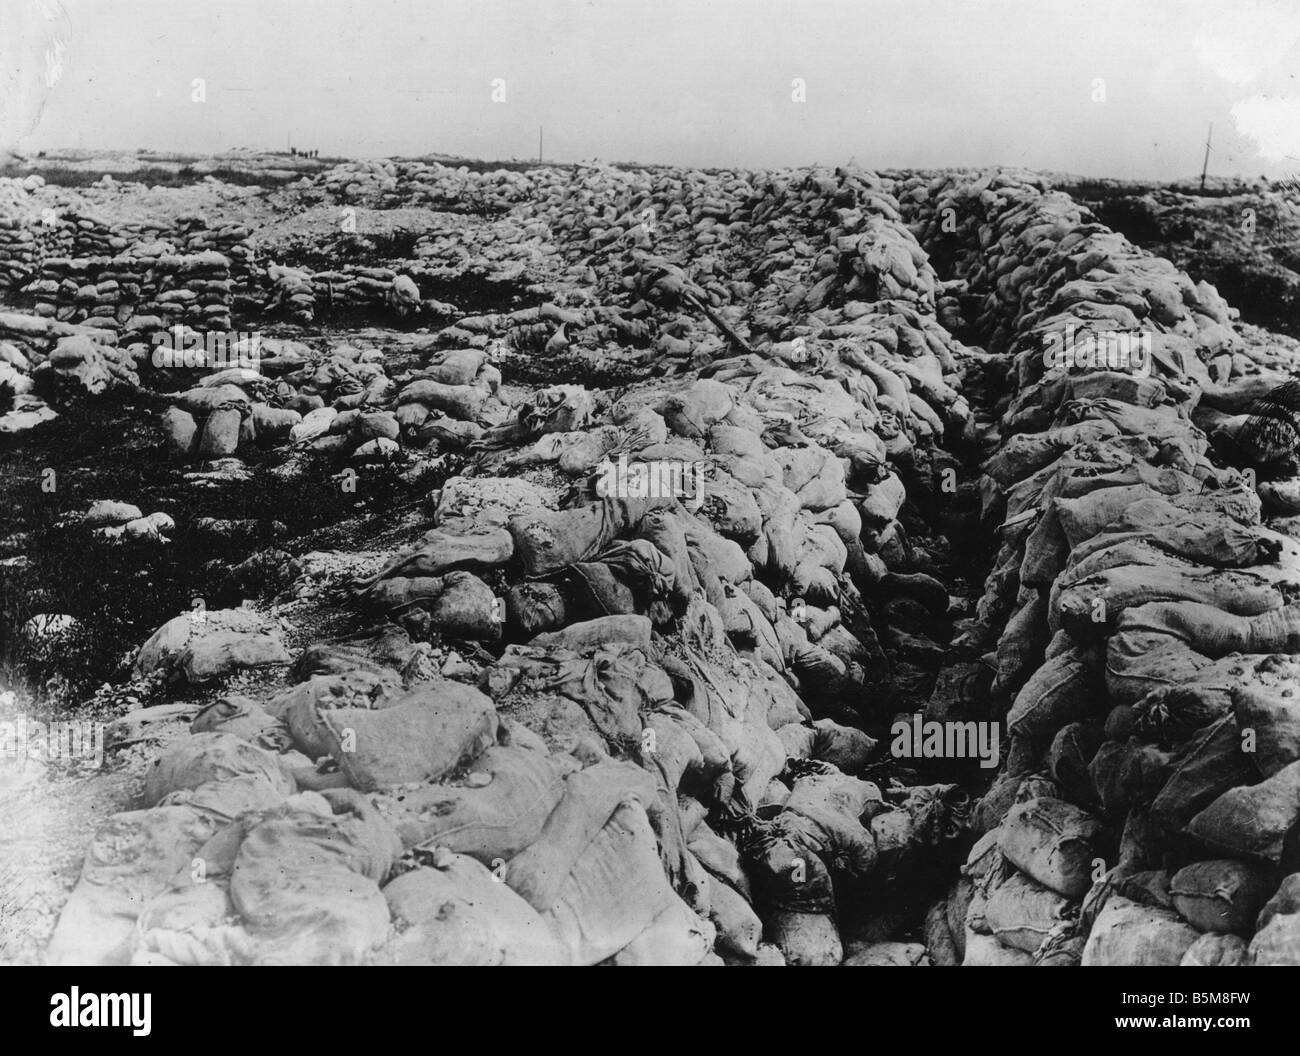 2 G55 F1 1917 22 WWI statische Kriegsführung Somme Sap Geschichte WWI Frankreich Schlacht an der Somme Sap Foto Datum unbekannt Stockfoto